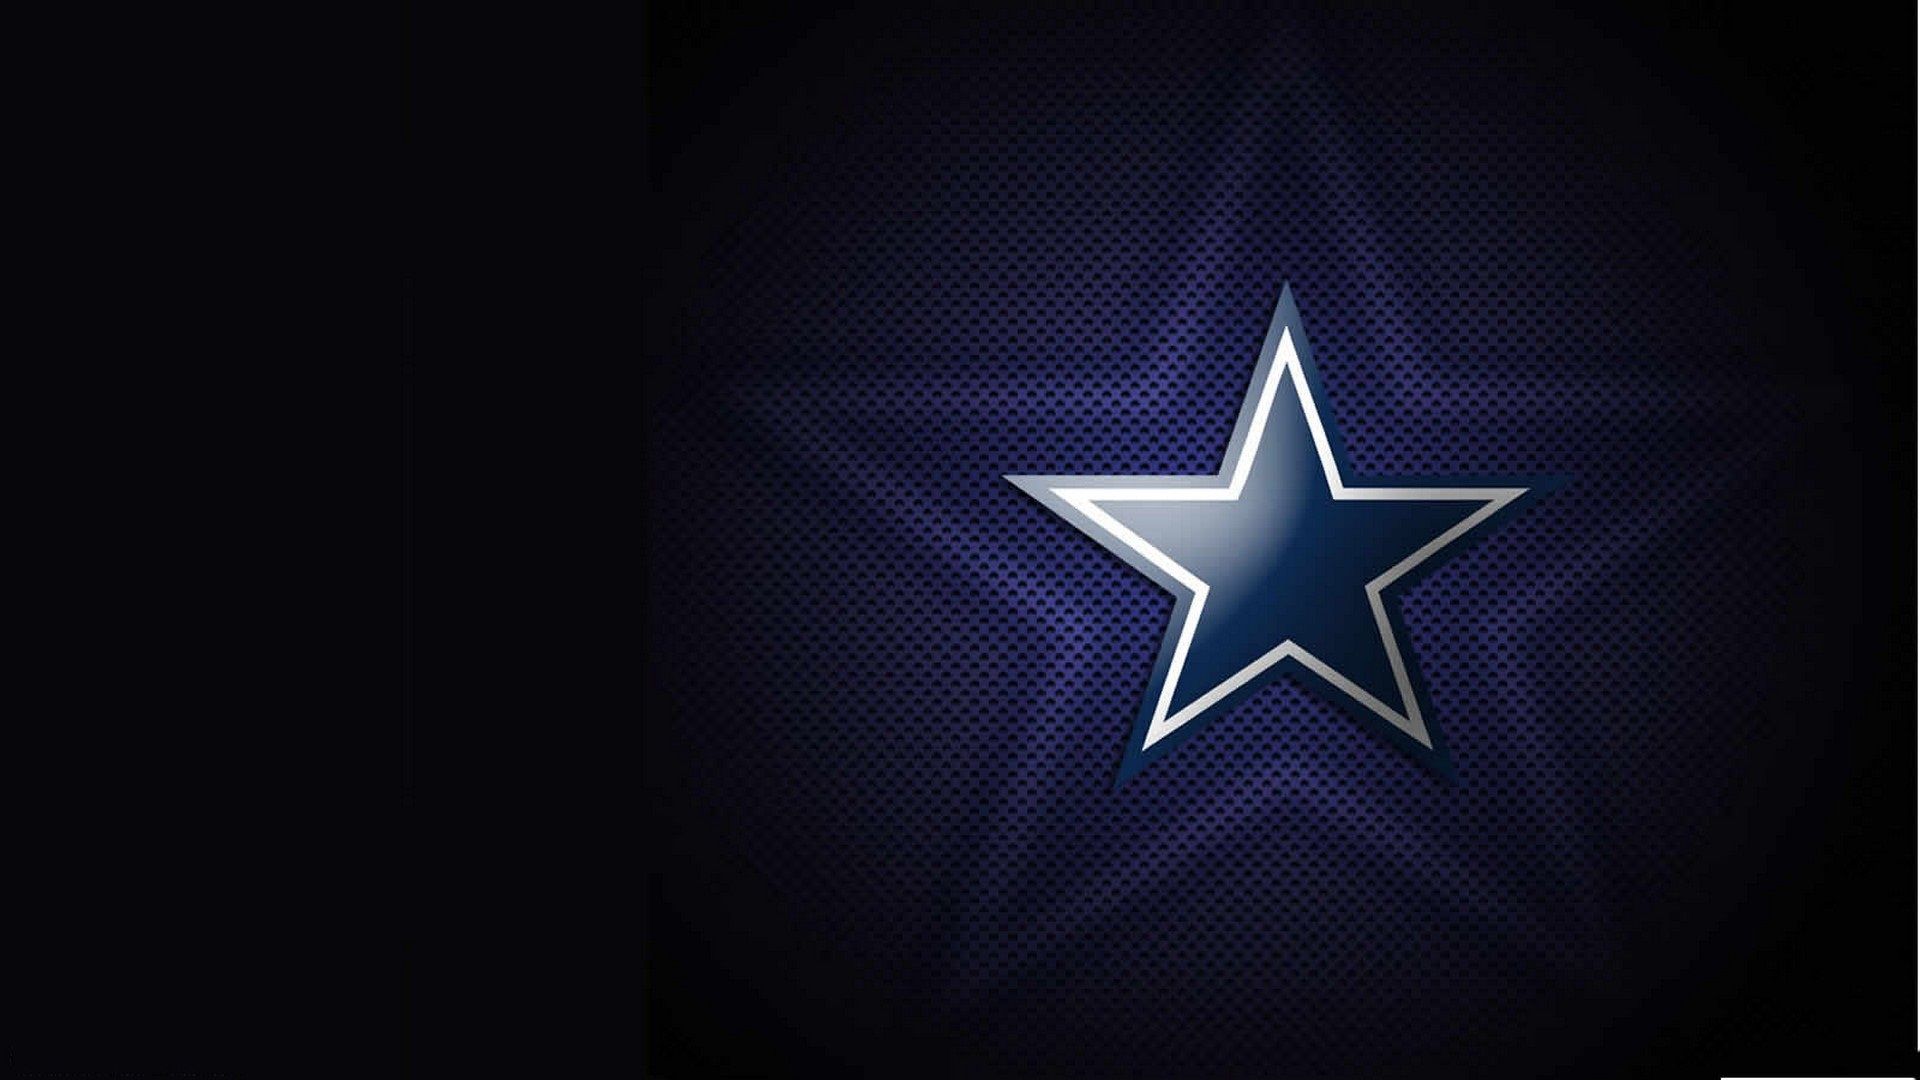 Dallas Cowboys Wallpaper Free Dallas Cowboys Background